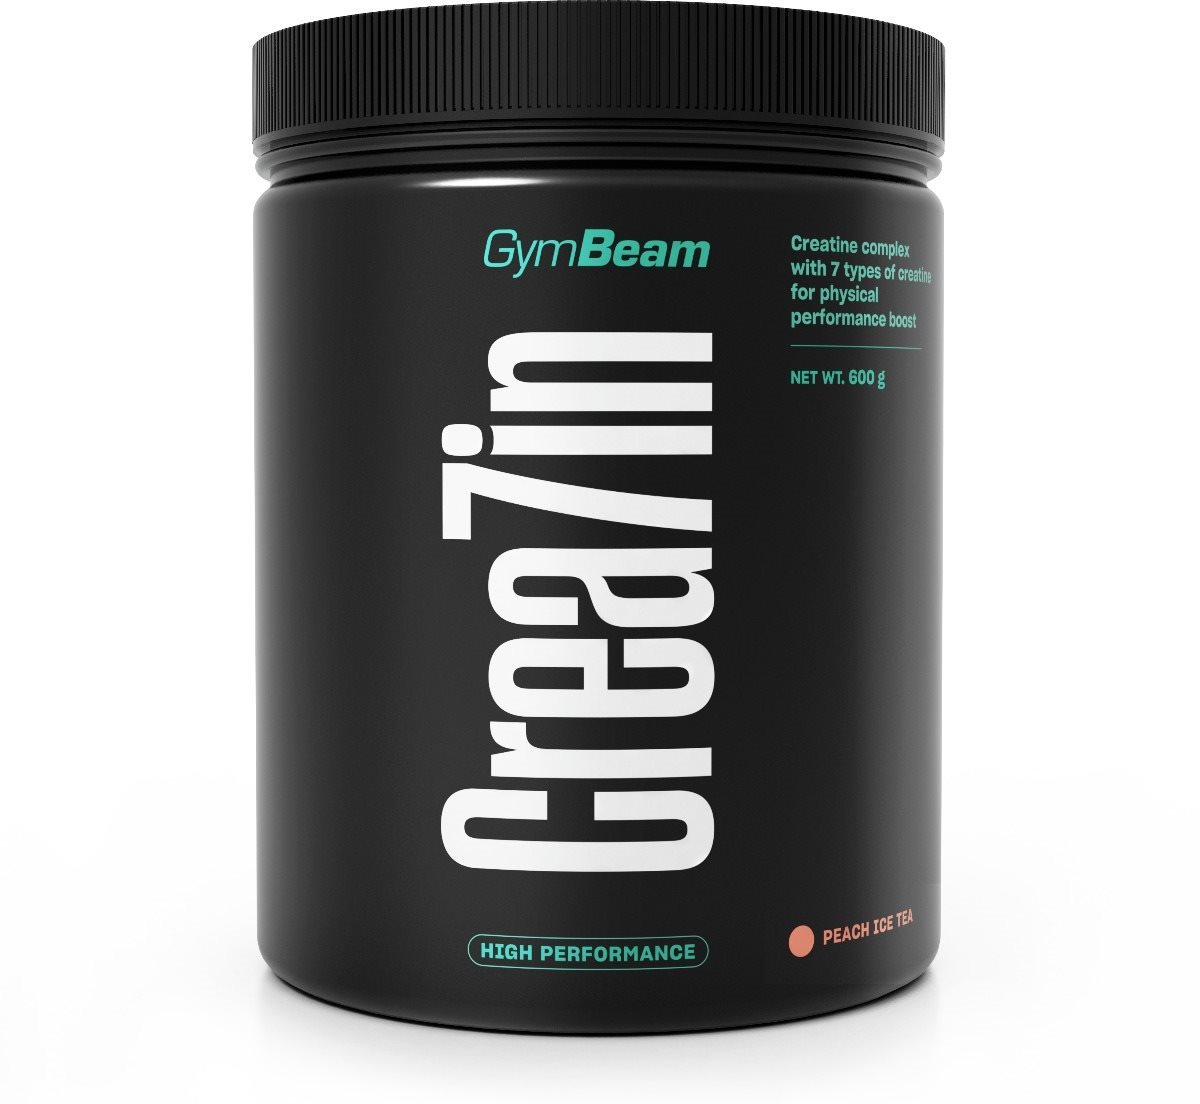 GymBeam Crea7in 600 g, peach ice tea